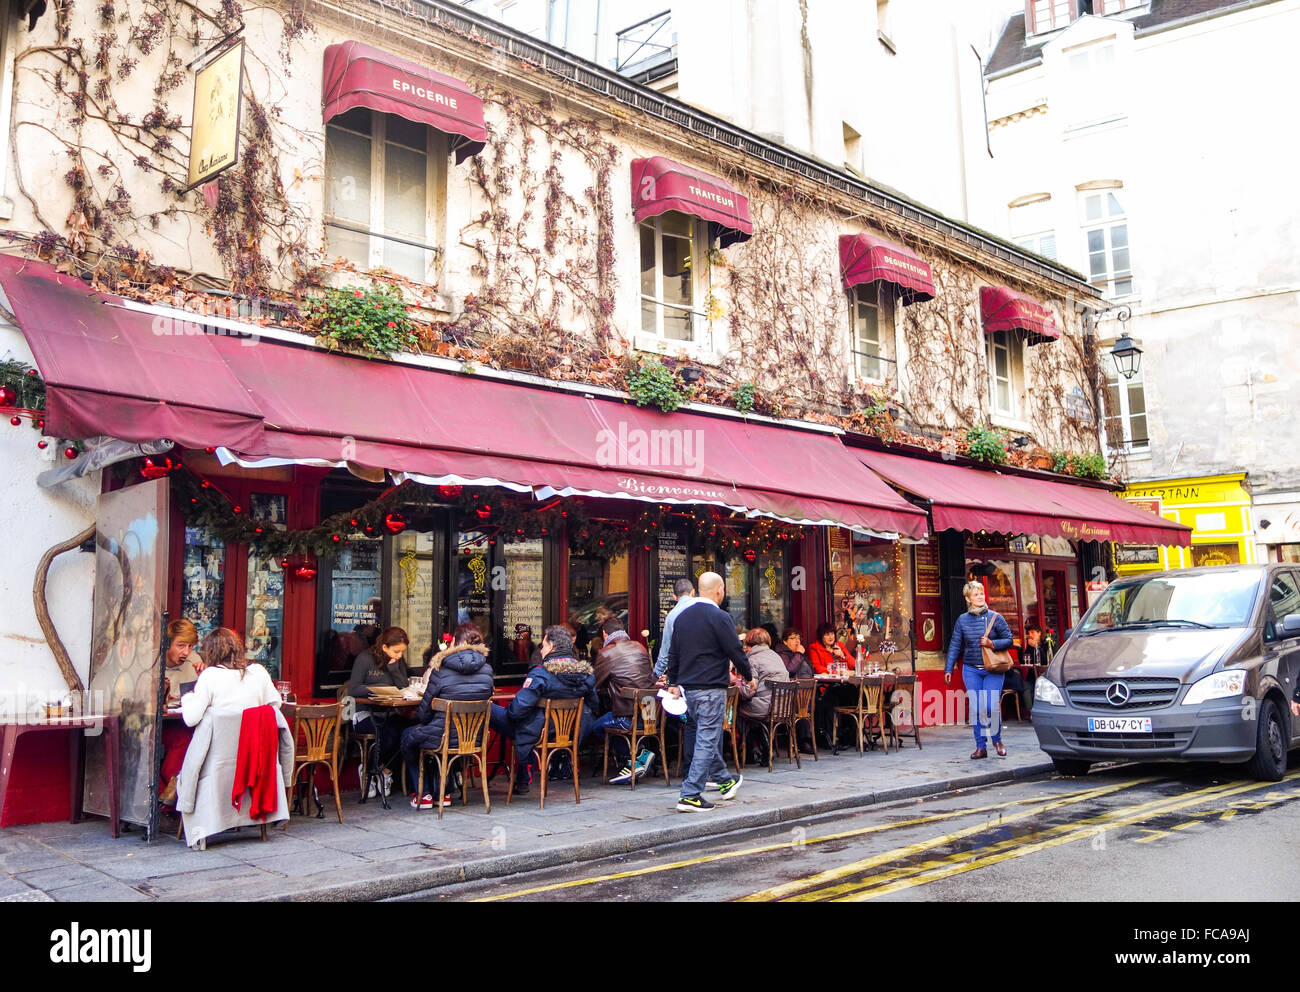 Chez Marianne, Jewish cafe bar, brasserie, restaurant, falafels, Le Marais, Paris, France Stock Photo